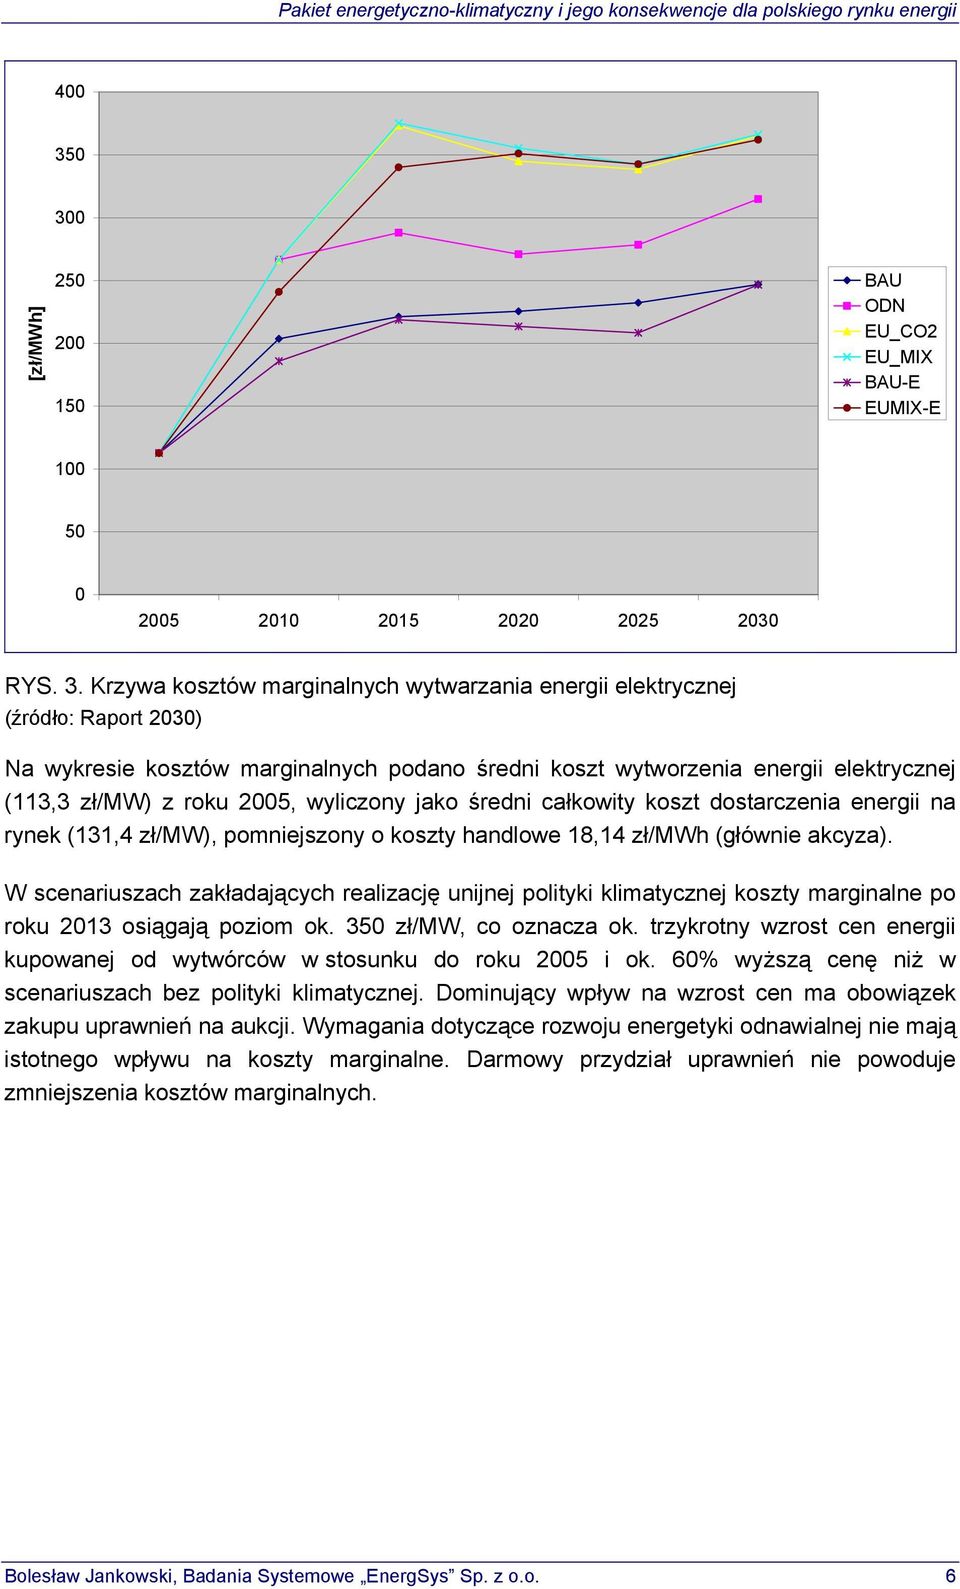 marginalnych podano średni koszt wytworzenia energii elektrycznej (113,3 zł/mw) z roku 2005, wyliczony jako średni całkowity koszt dostarczenia energii na rynek (131,4 zł/mw), pomniejszony o koszty